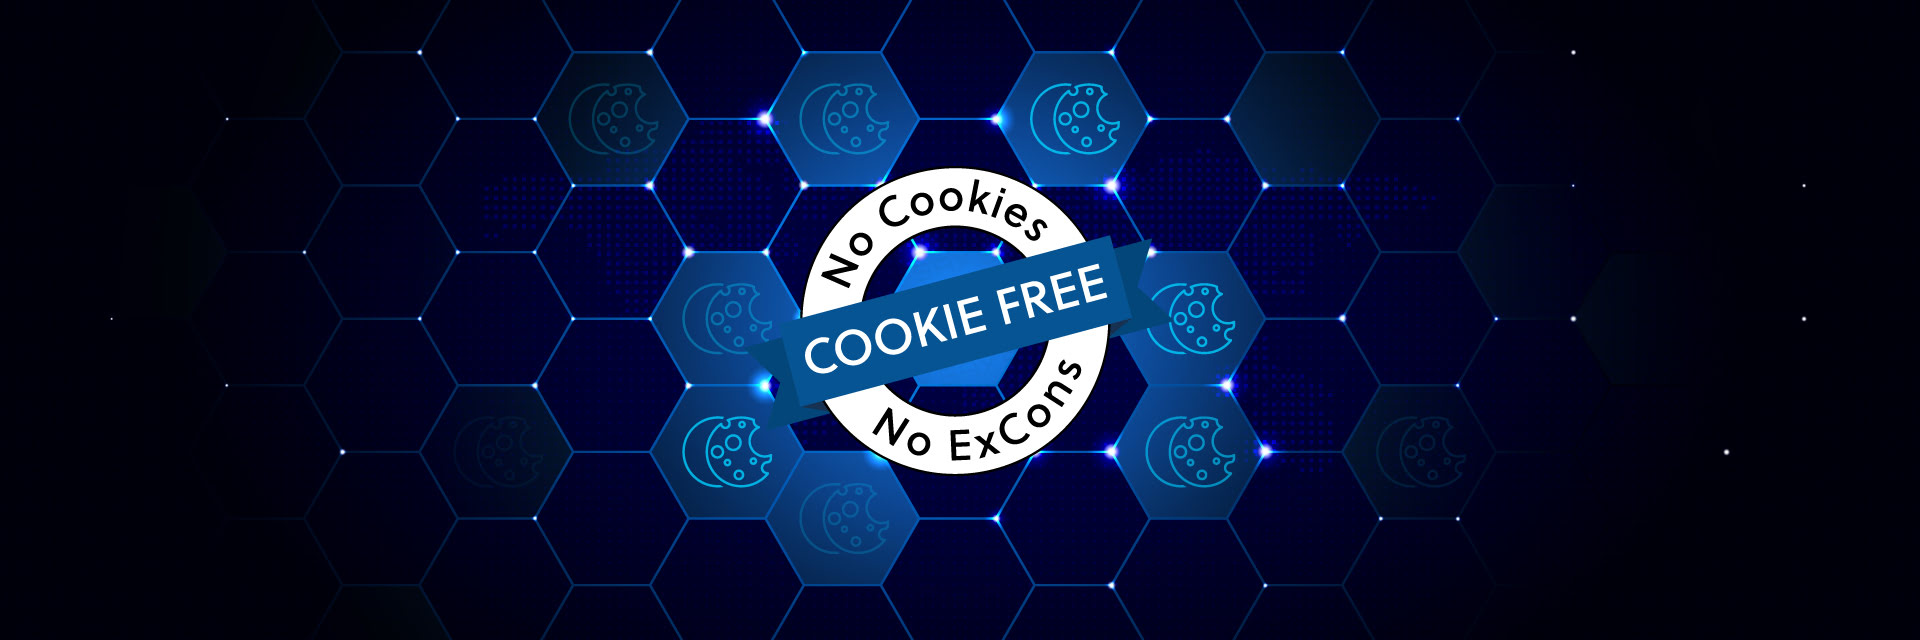 SMC Cookie-free Label